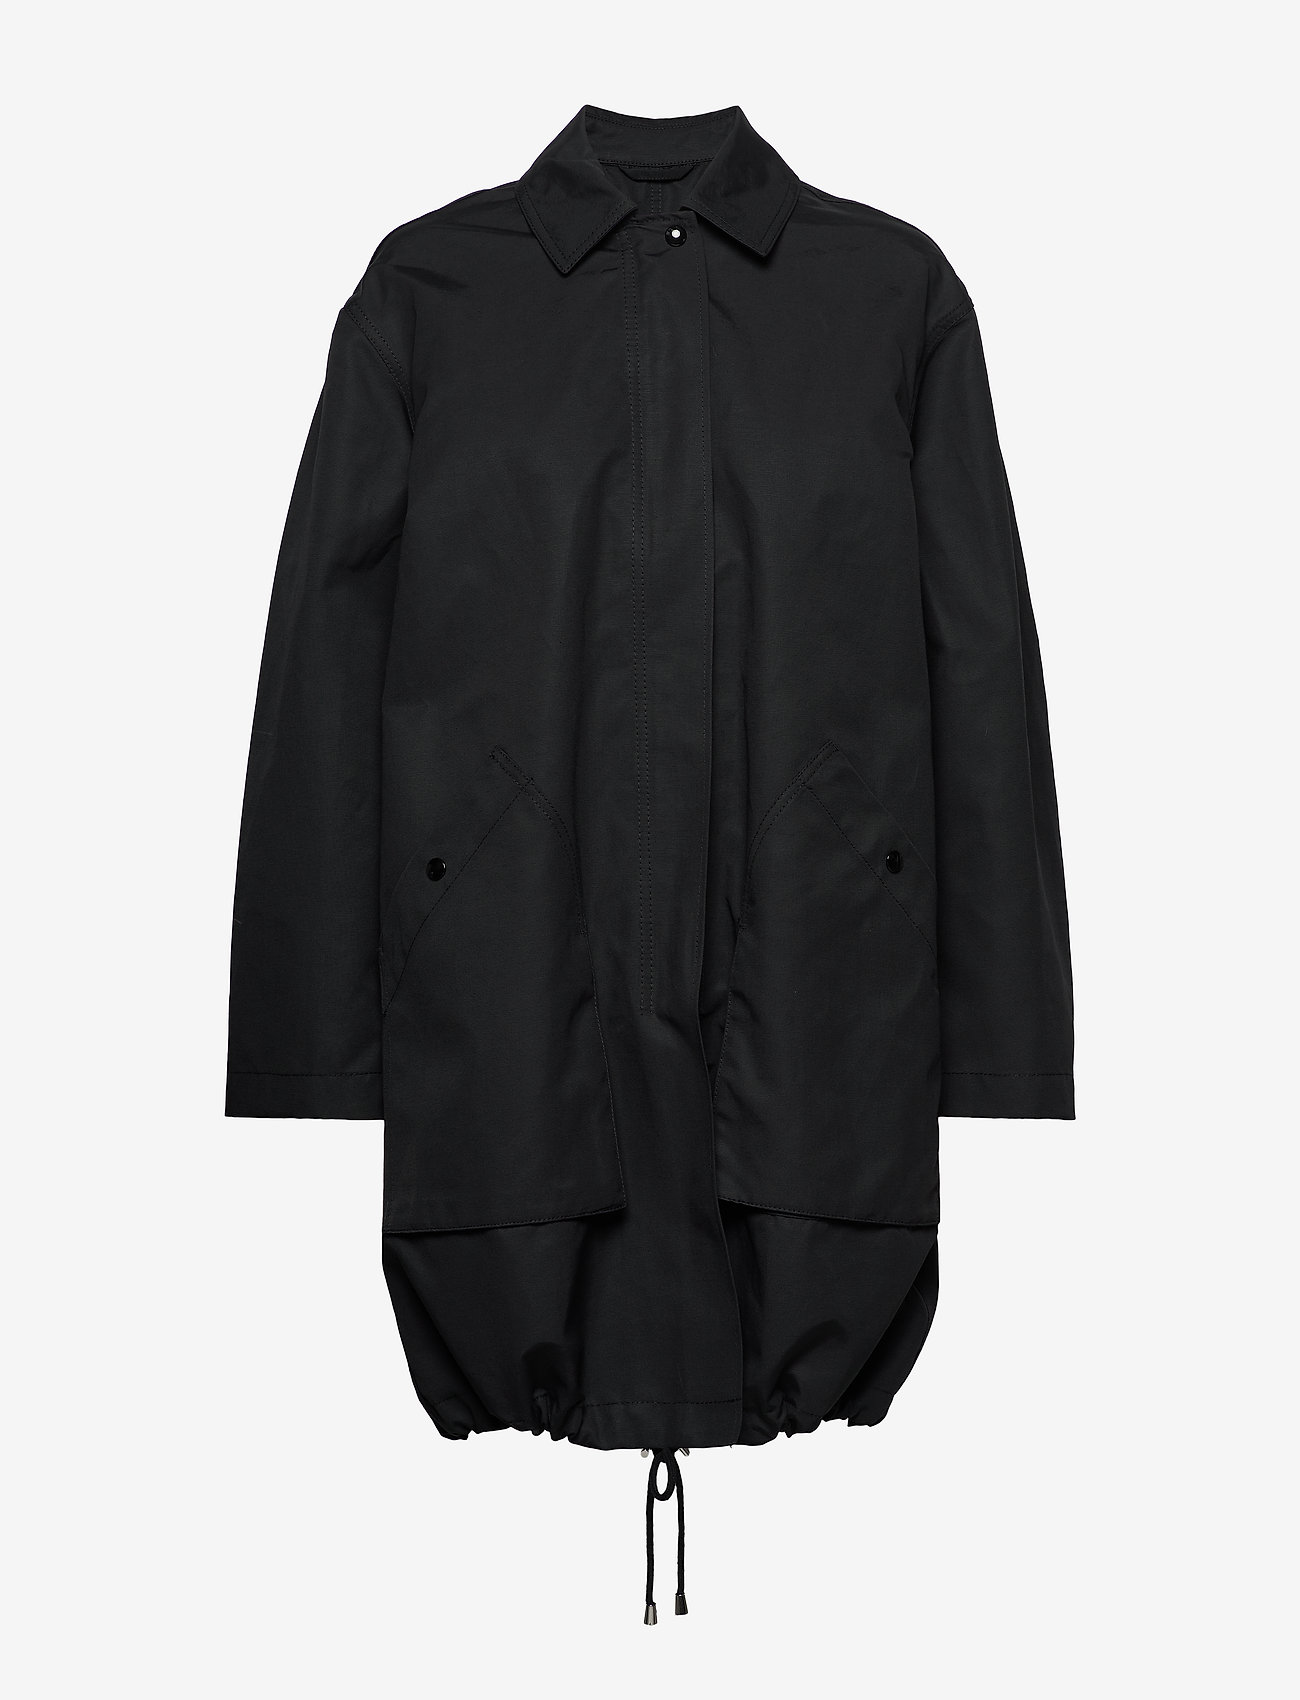 Filippa K Portland Coat (Black) - 1750 kr | Boozt.com